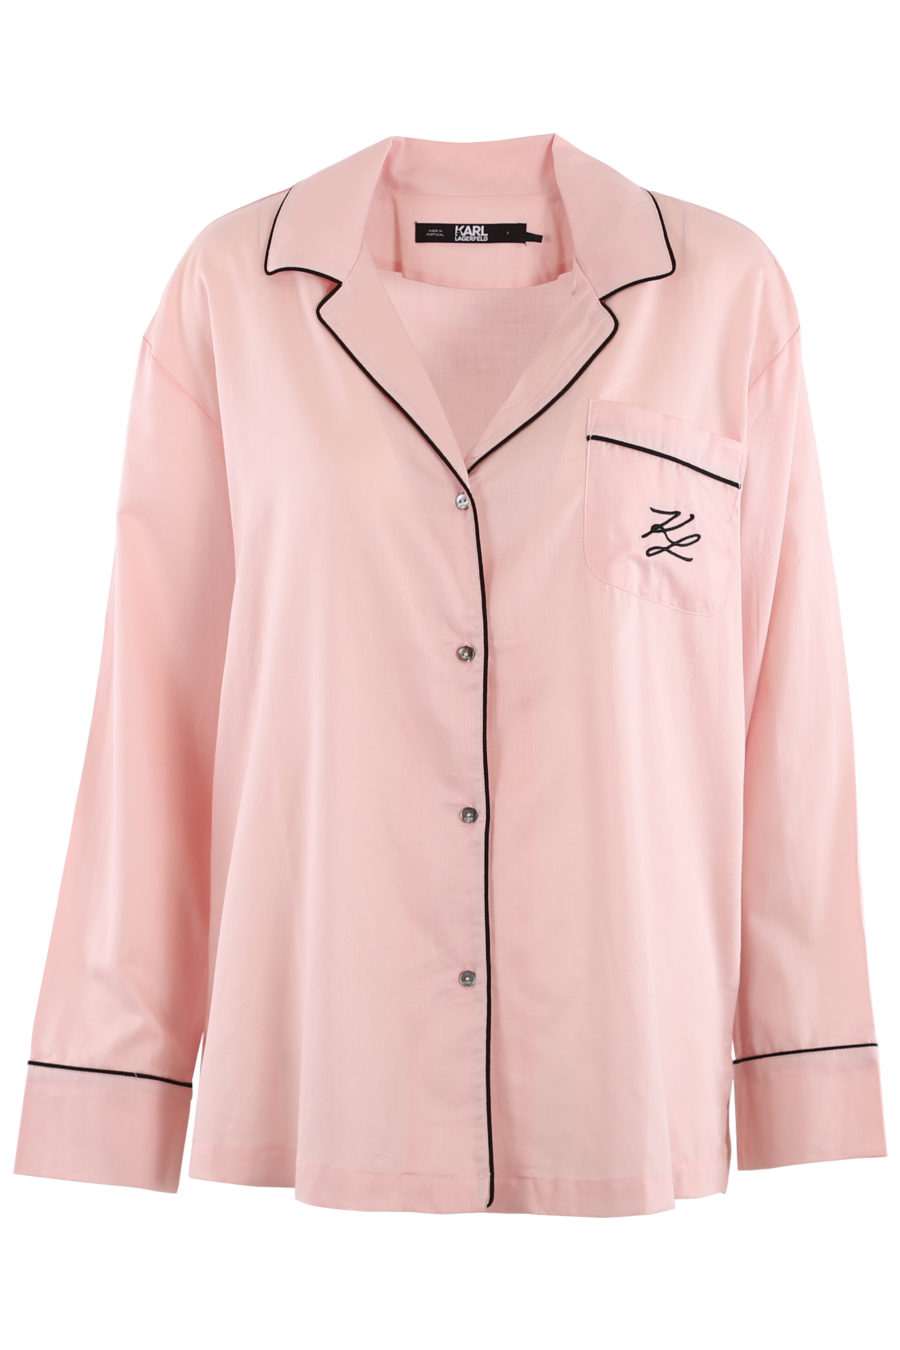 Conjunto de pijama de color rosa - 7345845be1ad0a2af1e4b5d51cad20c5ada67893